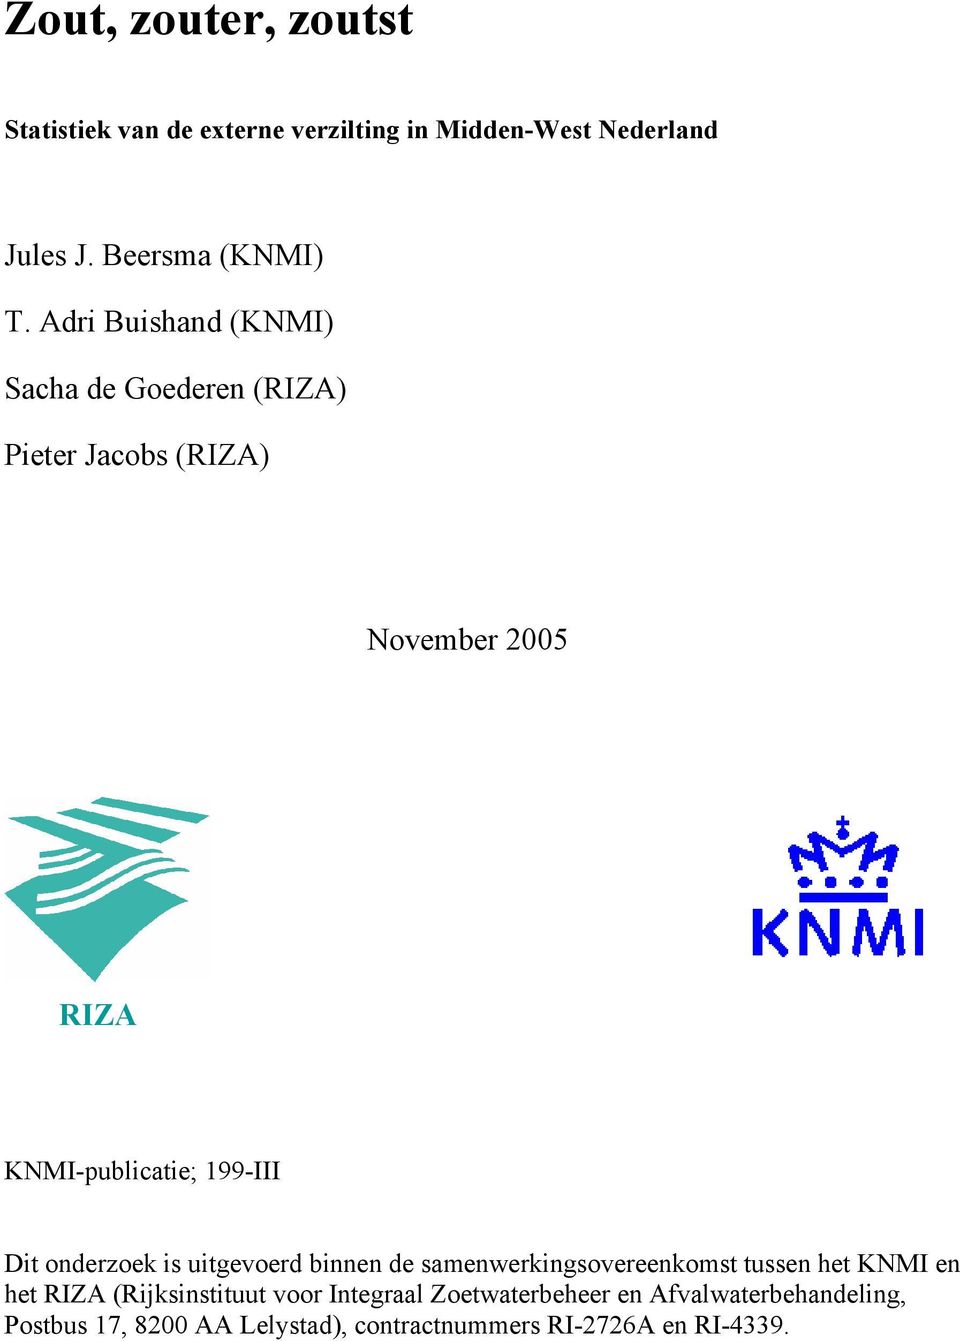 Dit onderzoek is uitgevoerd binnen de samenwerkingsovereenkomst tussen het KNMI en het RIZA (Rijksinstituut voor